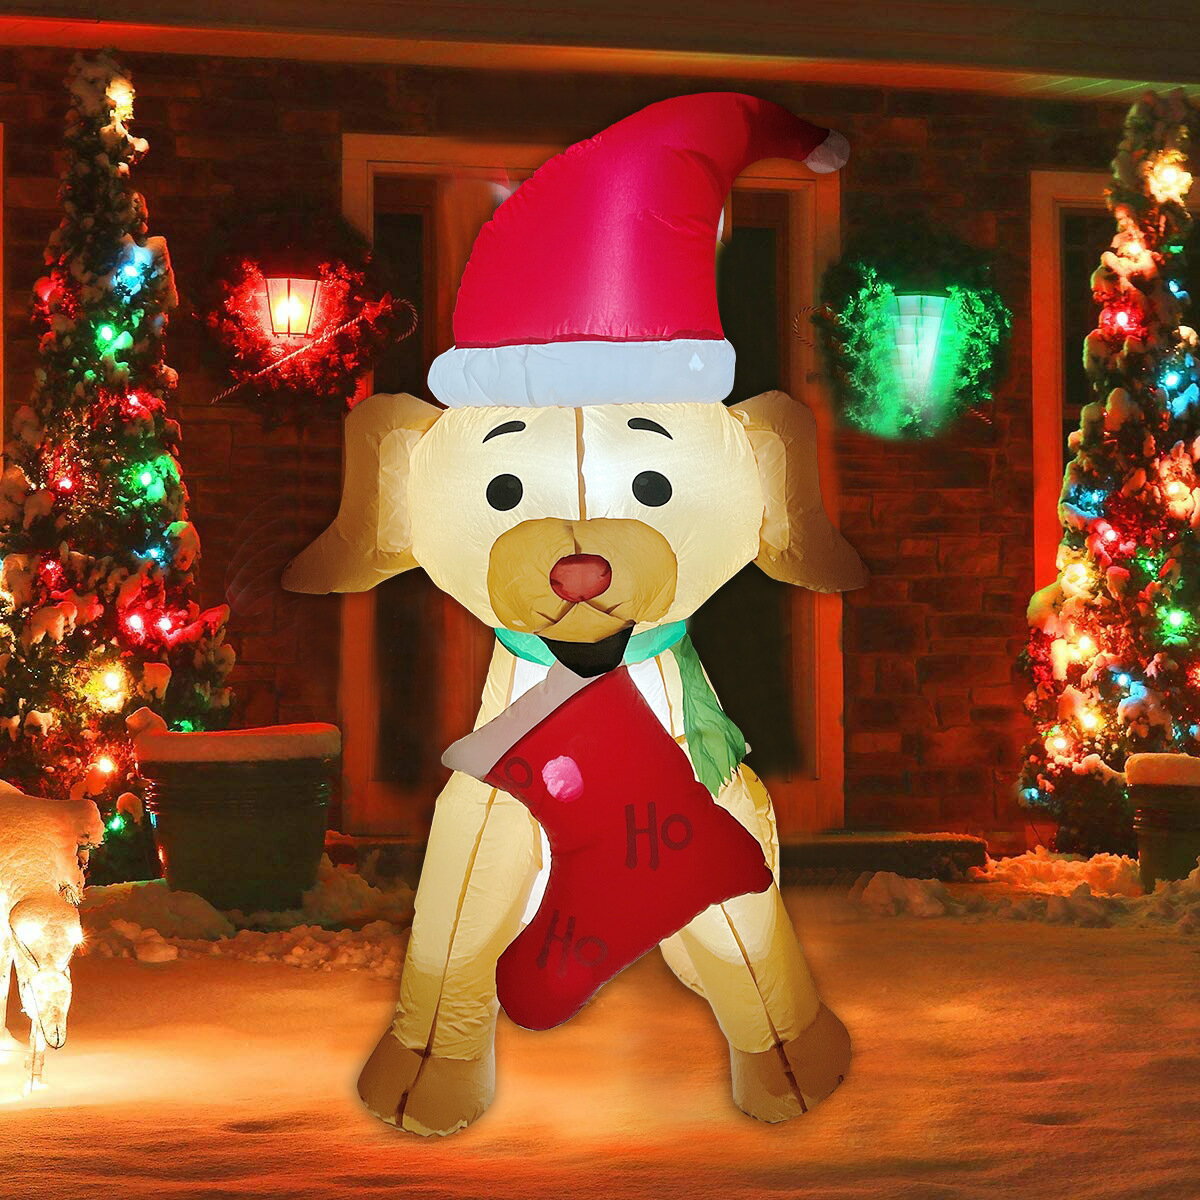 110V 聖誕節裝飾 免運 2021圣誕節庭院裝飾1.5m小狗襪子充氣燈光圣誕節充氣老人雪人 交換禮物